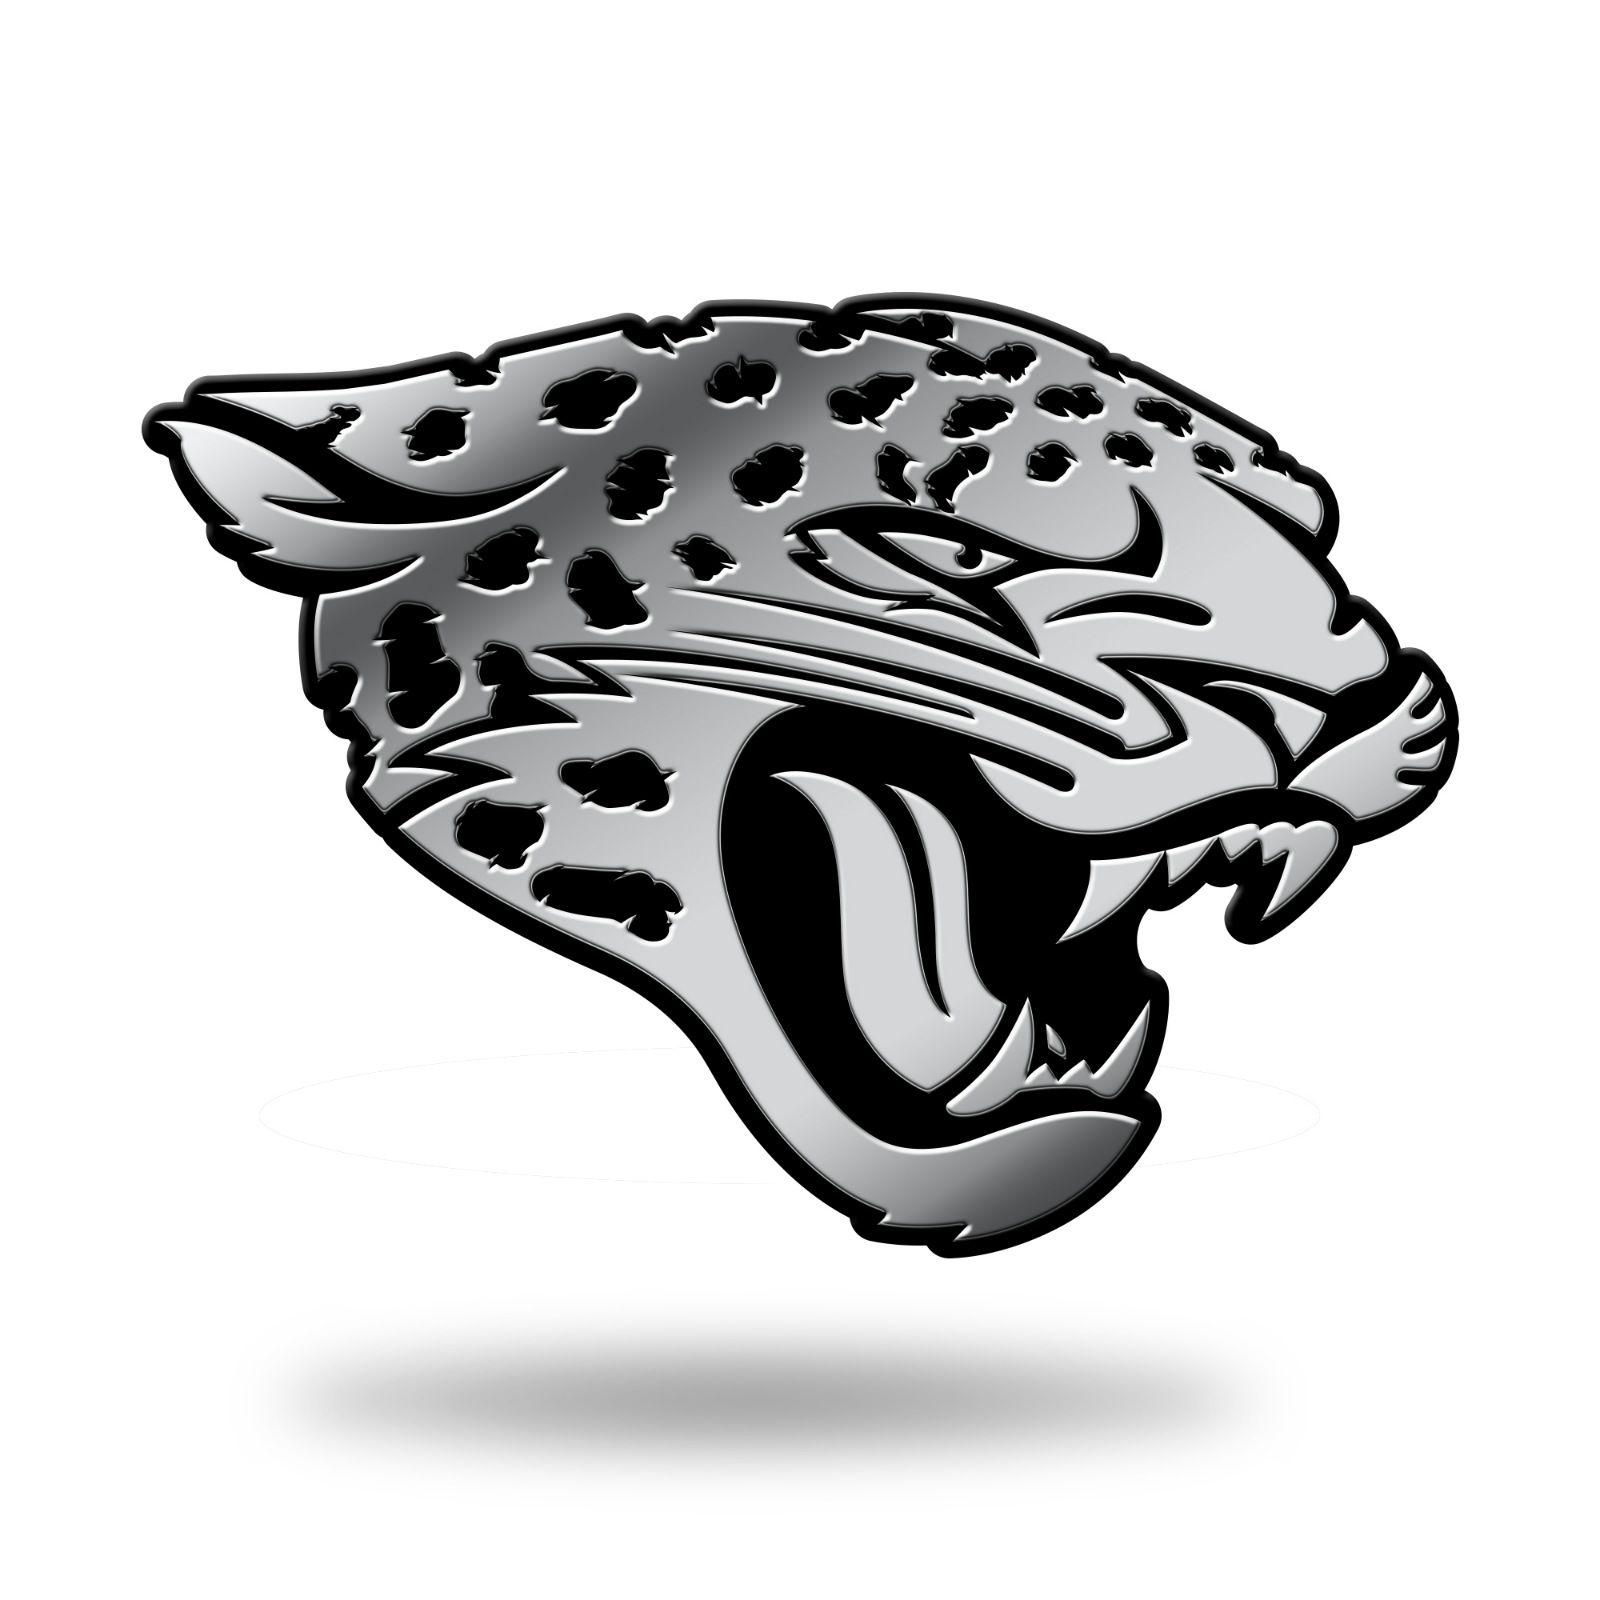 Jaguars Logo - Details about Jacksonville Jaguars Logo 3D Chrome Auto Decal Sticker NEW  Truck Car Rico